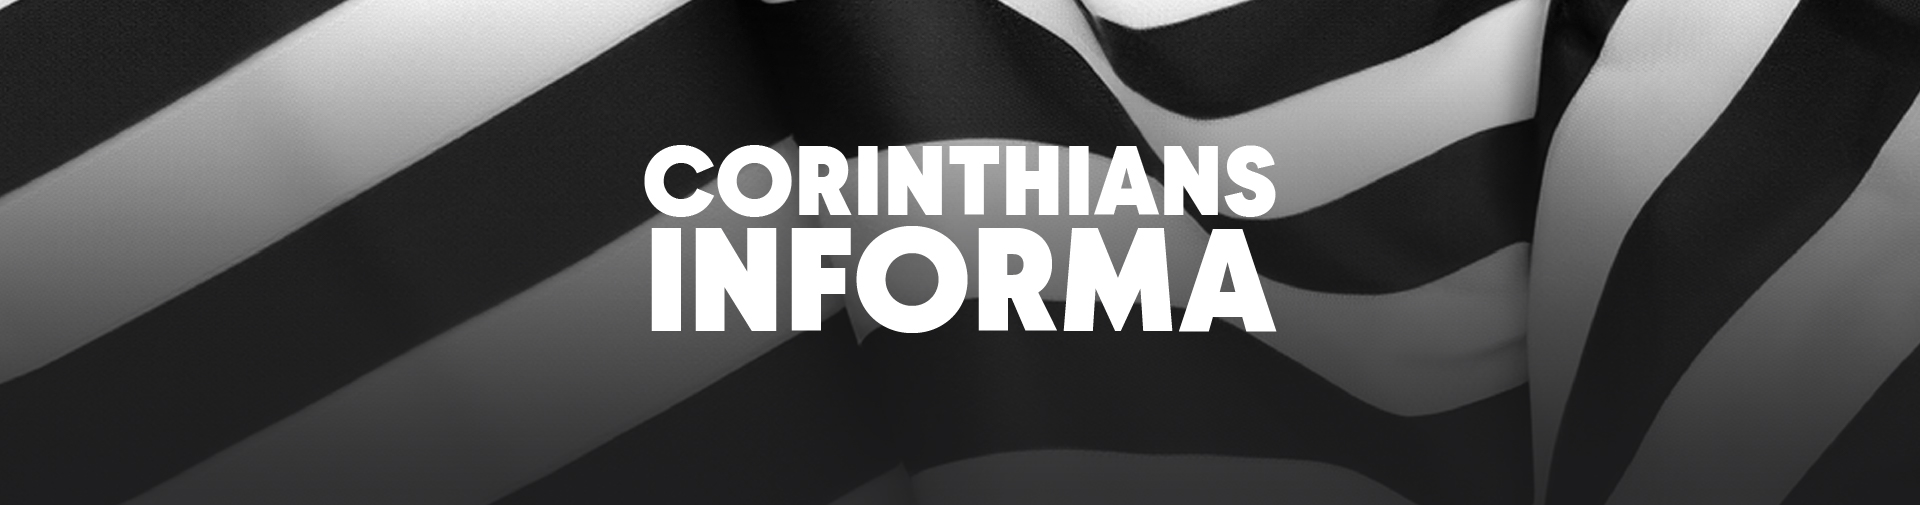 Corinthians informa: Suspensão do Campeonato Brasileiro